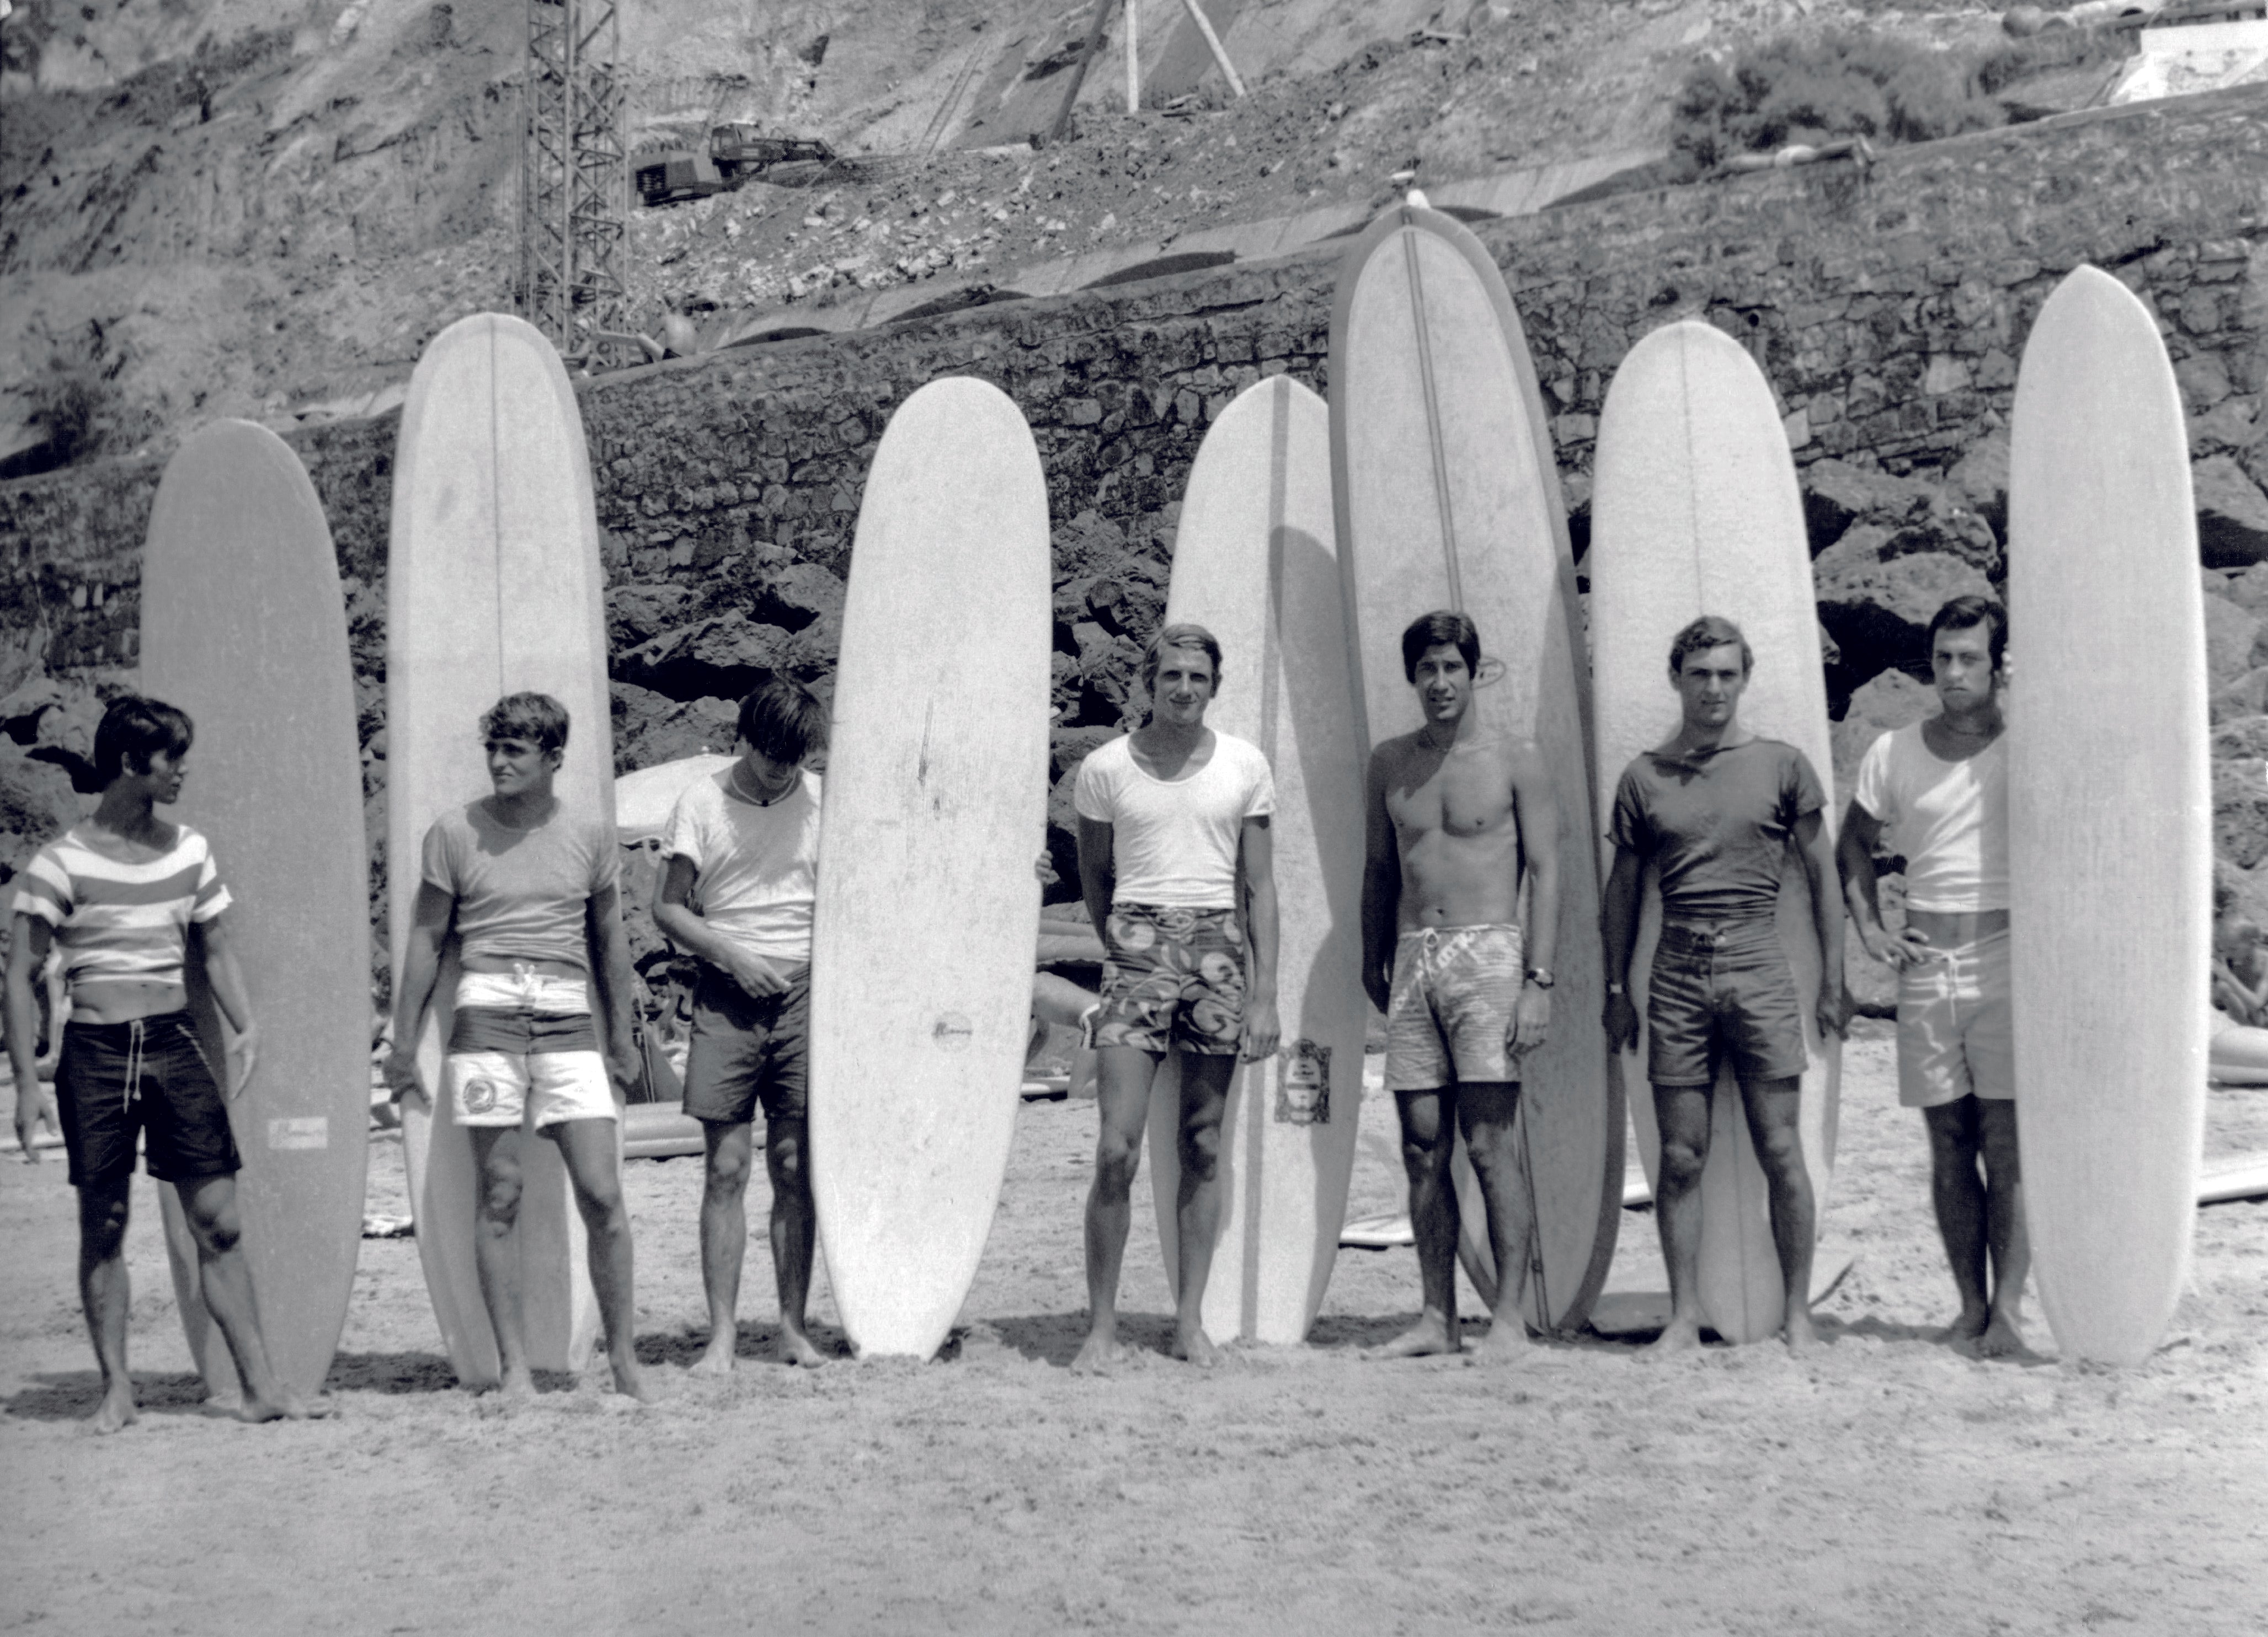 Origine du surf en France